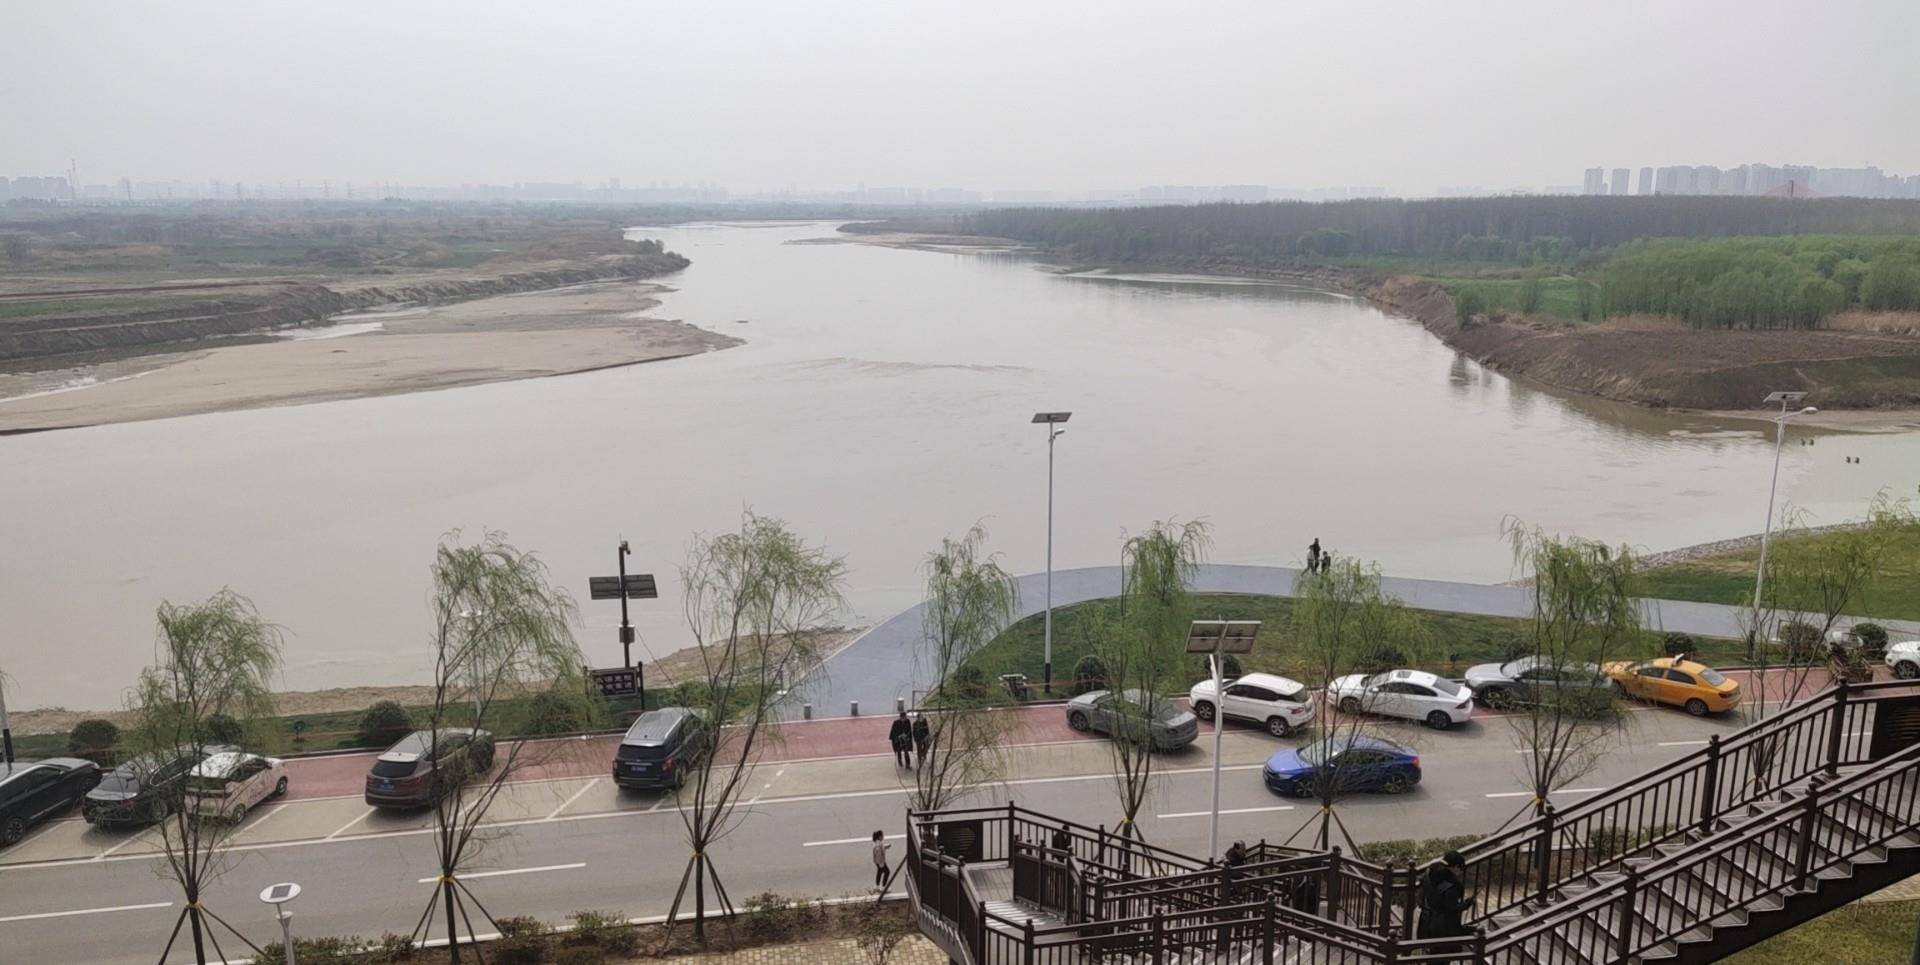 横渡渭河图片